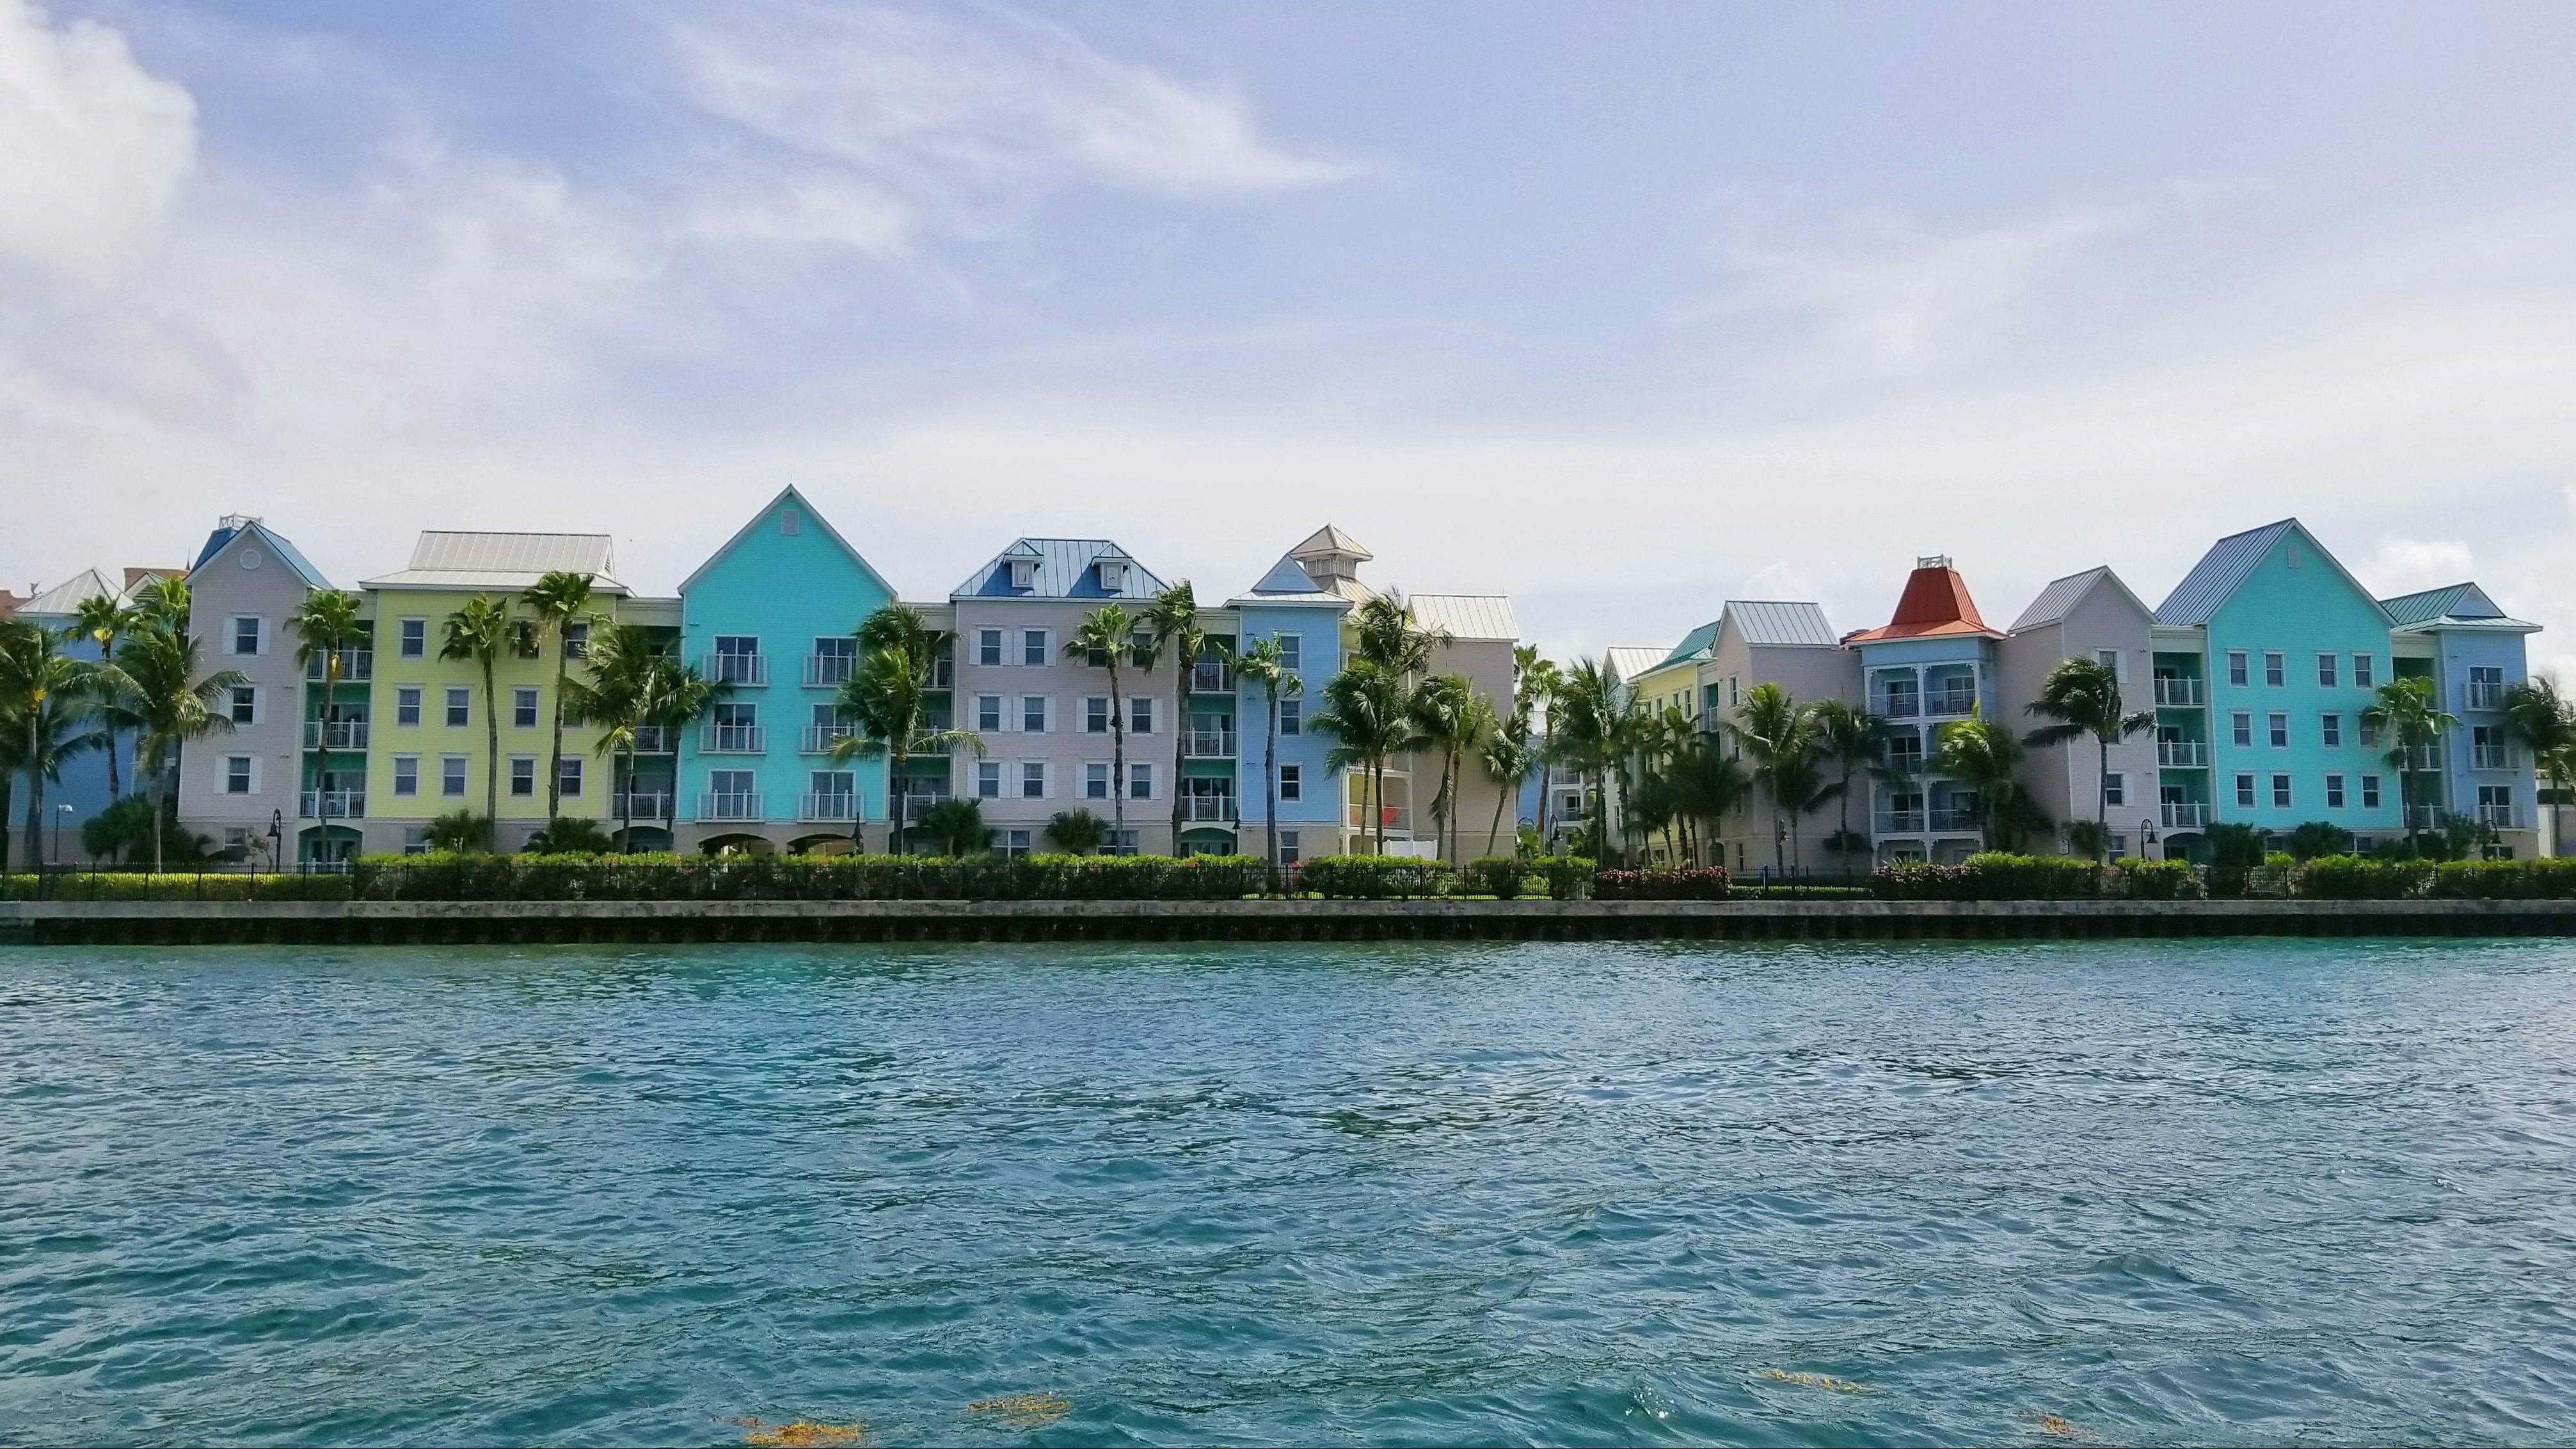 巴哈马群岛的拿骚以其奢华的生活方式和美丽的海滩而闻名，对外籍人士来说，这里的生活成本很高。该市在榜单上排名第九。